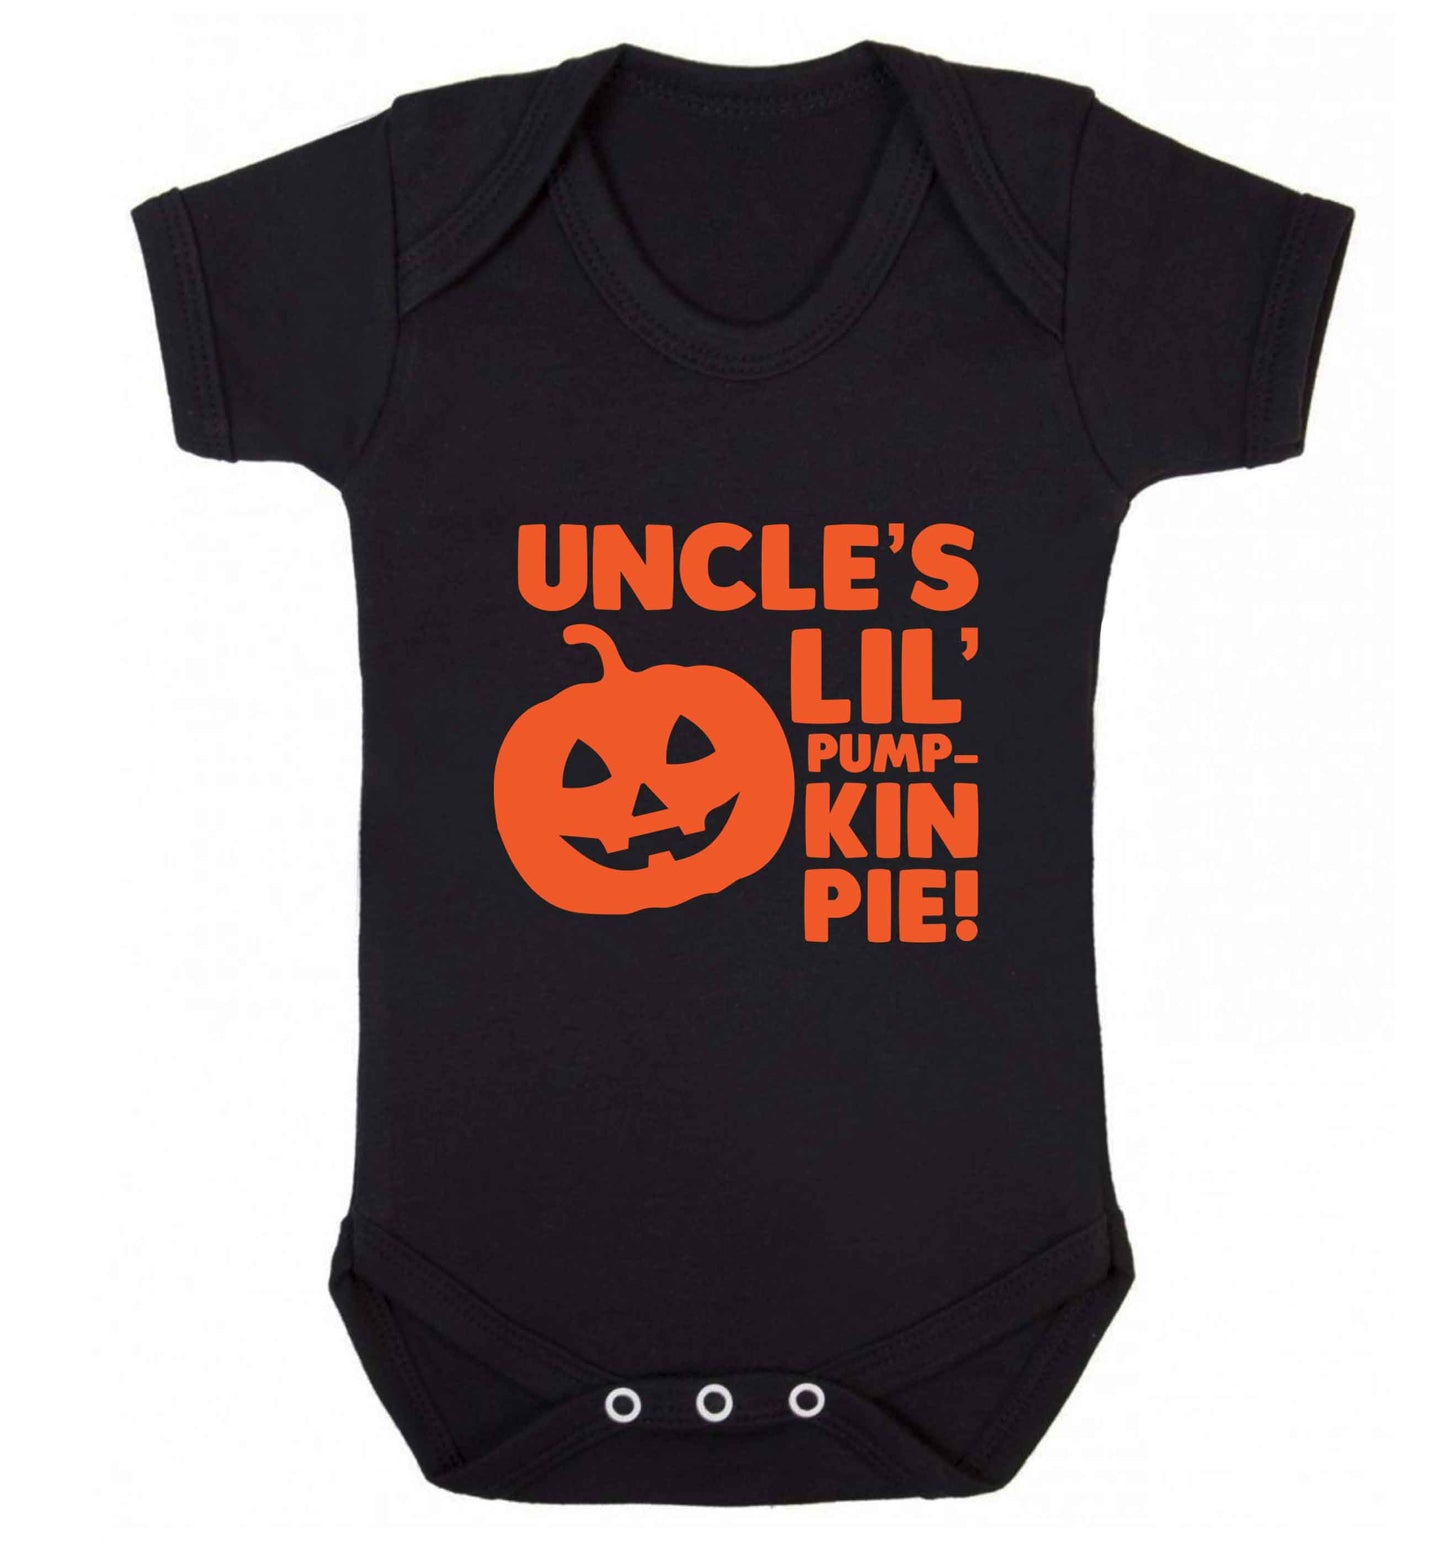 Uncle's lil' pumpkin pie baby vest black 18-24 months